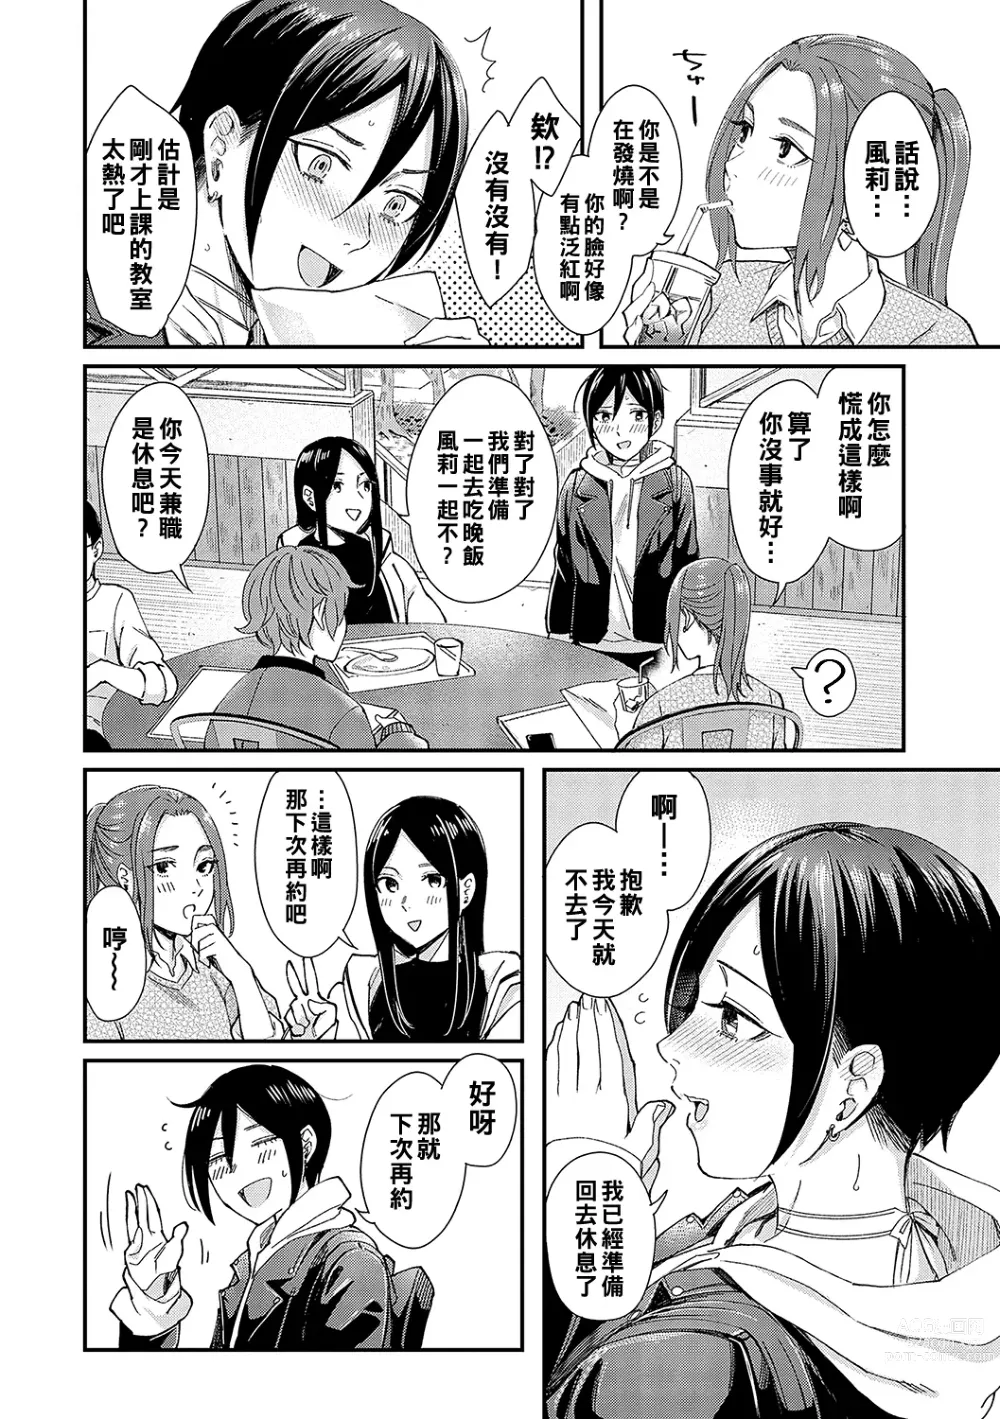 Page 4 of manga Kimi wa Tennenshoku